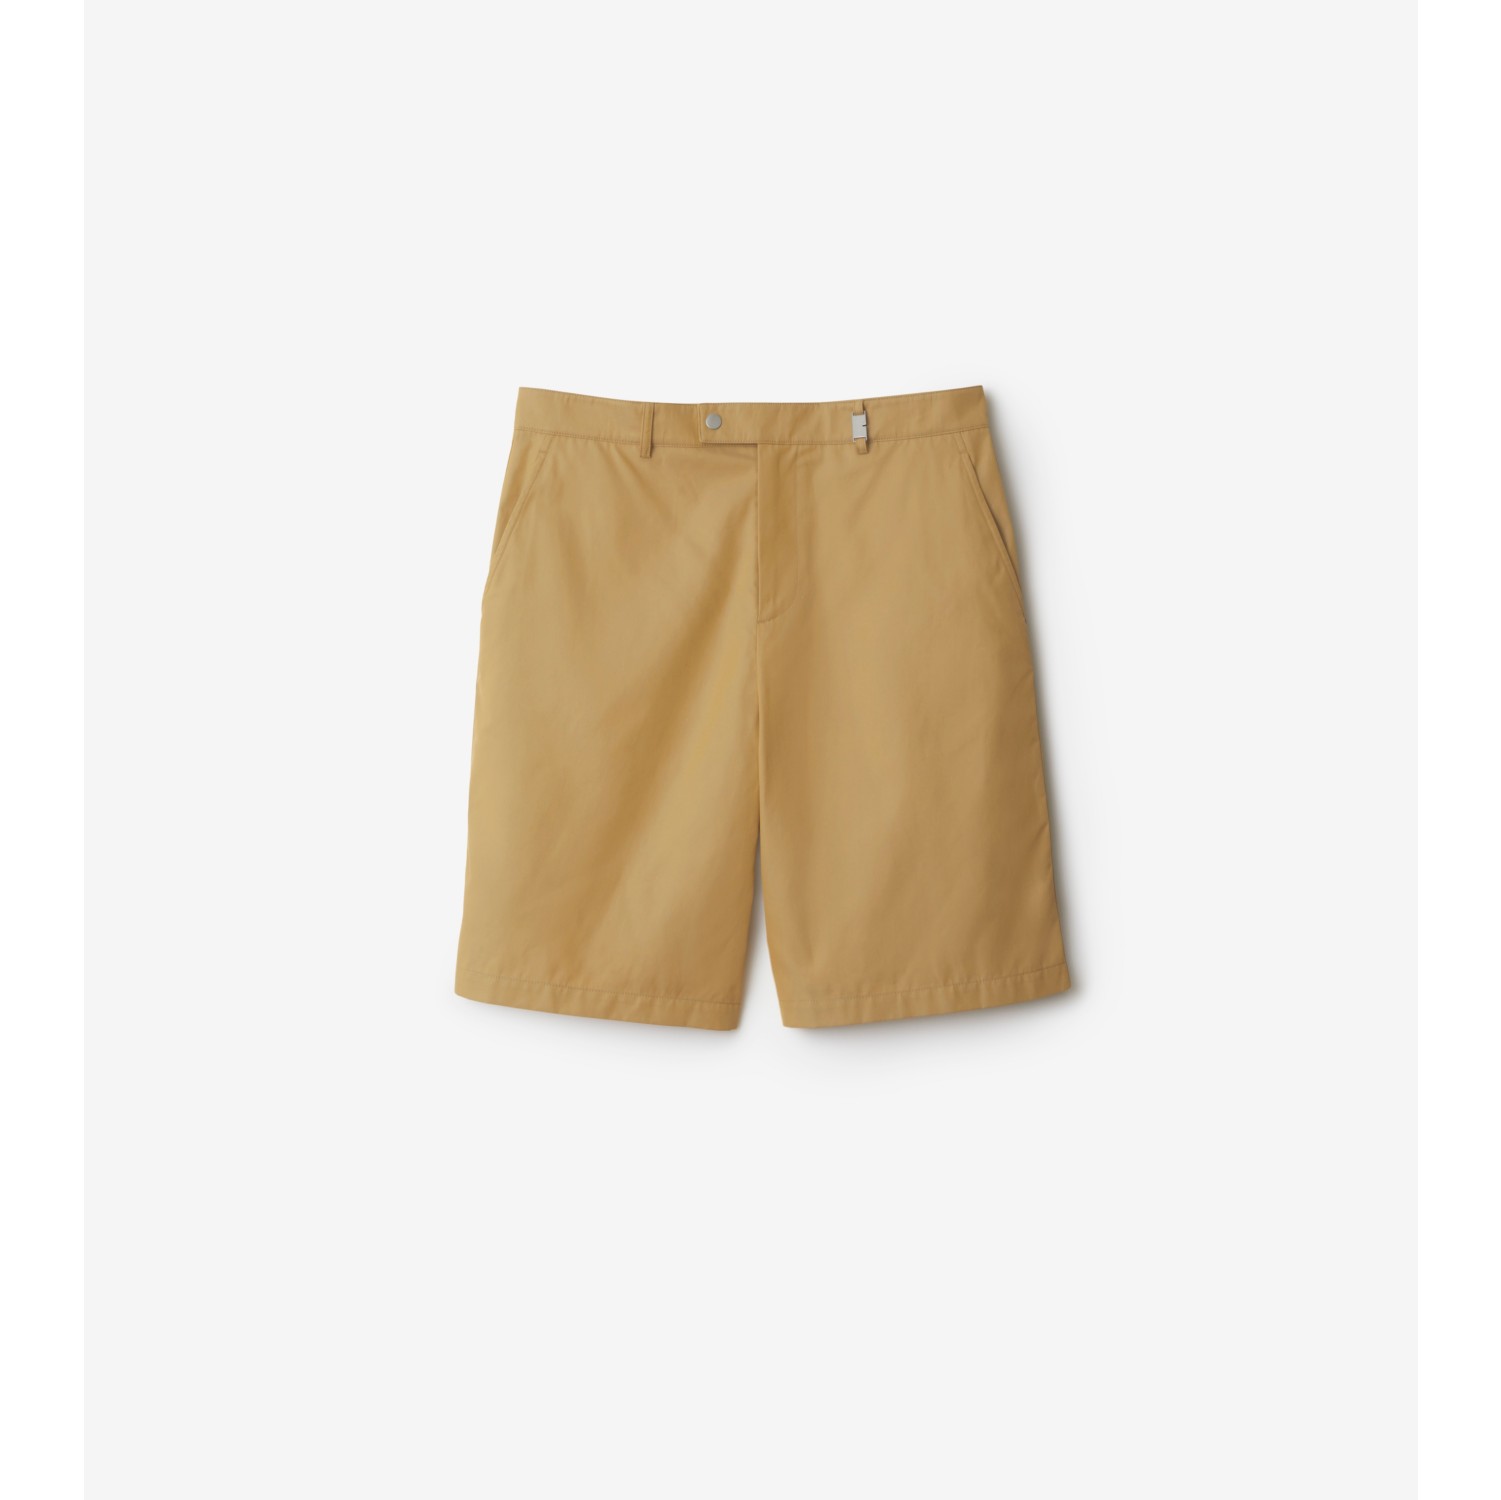 Pantalones chinos cortos en algodón